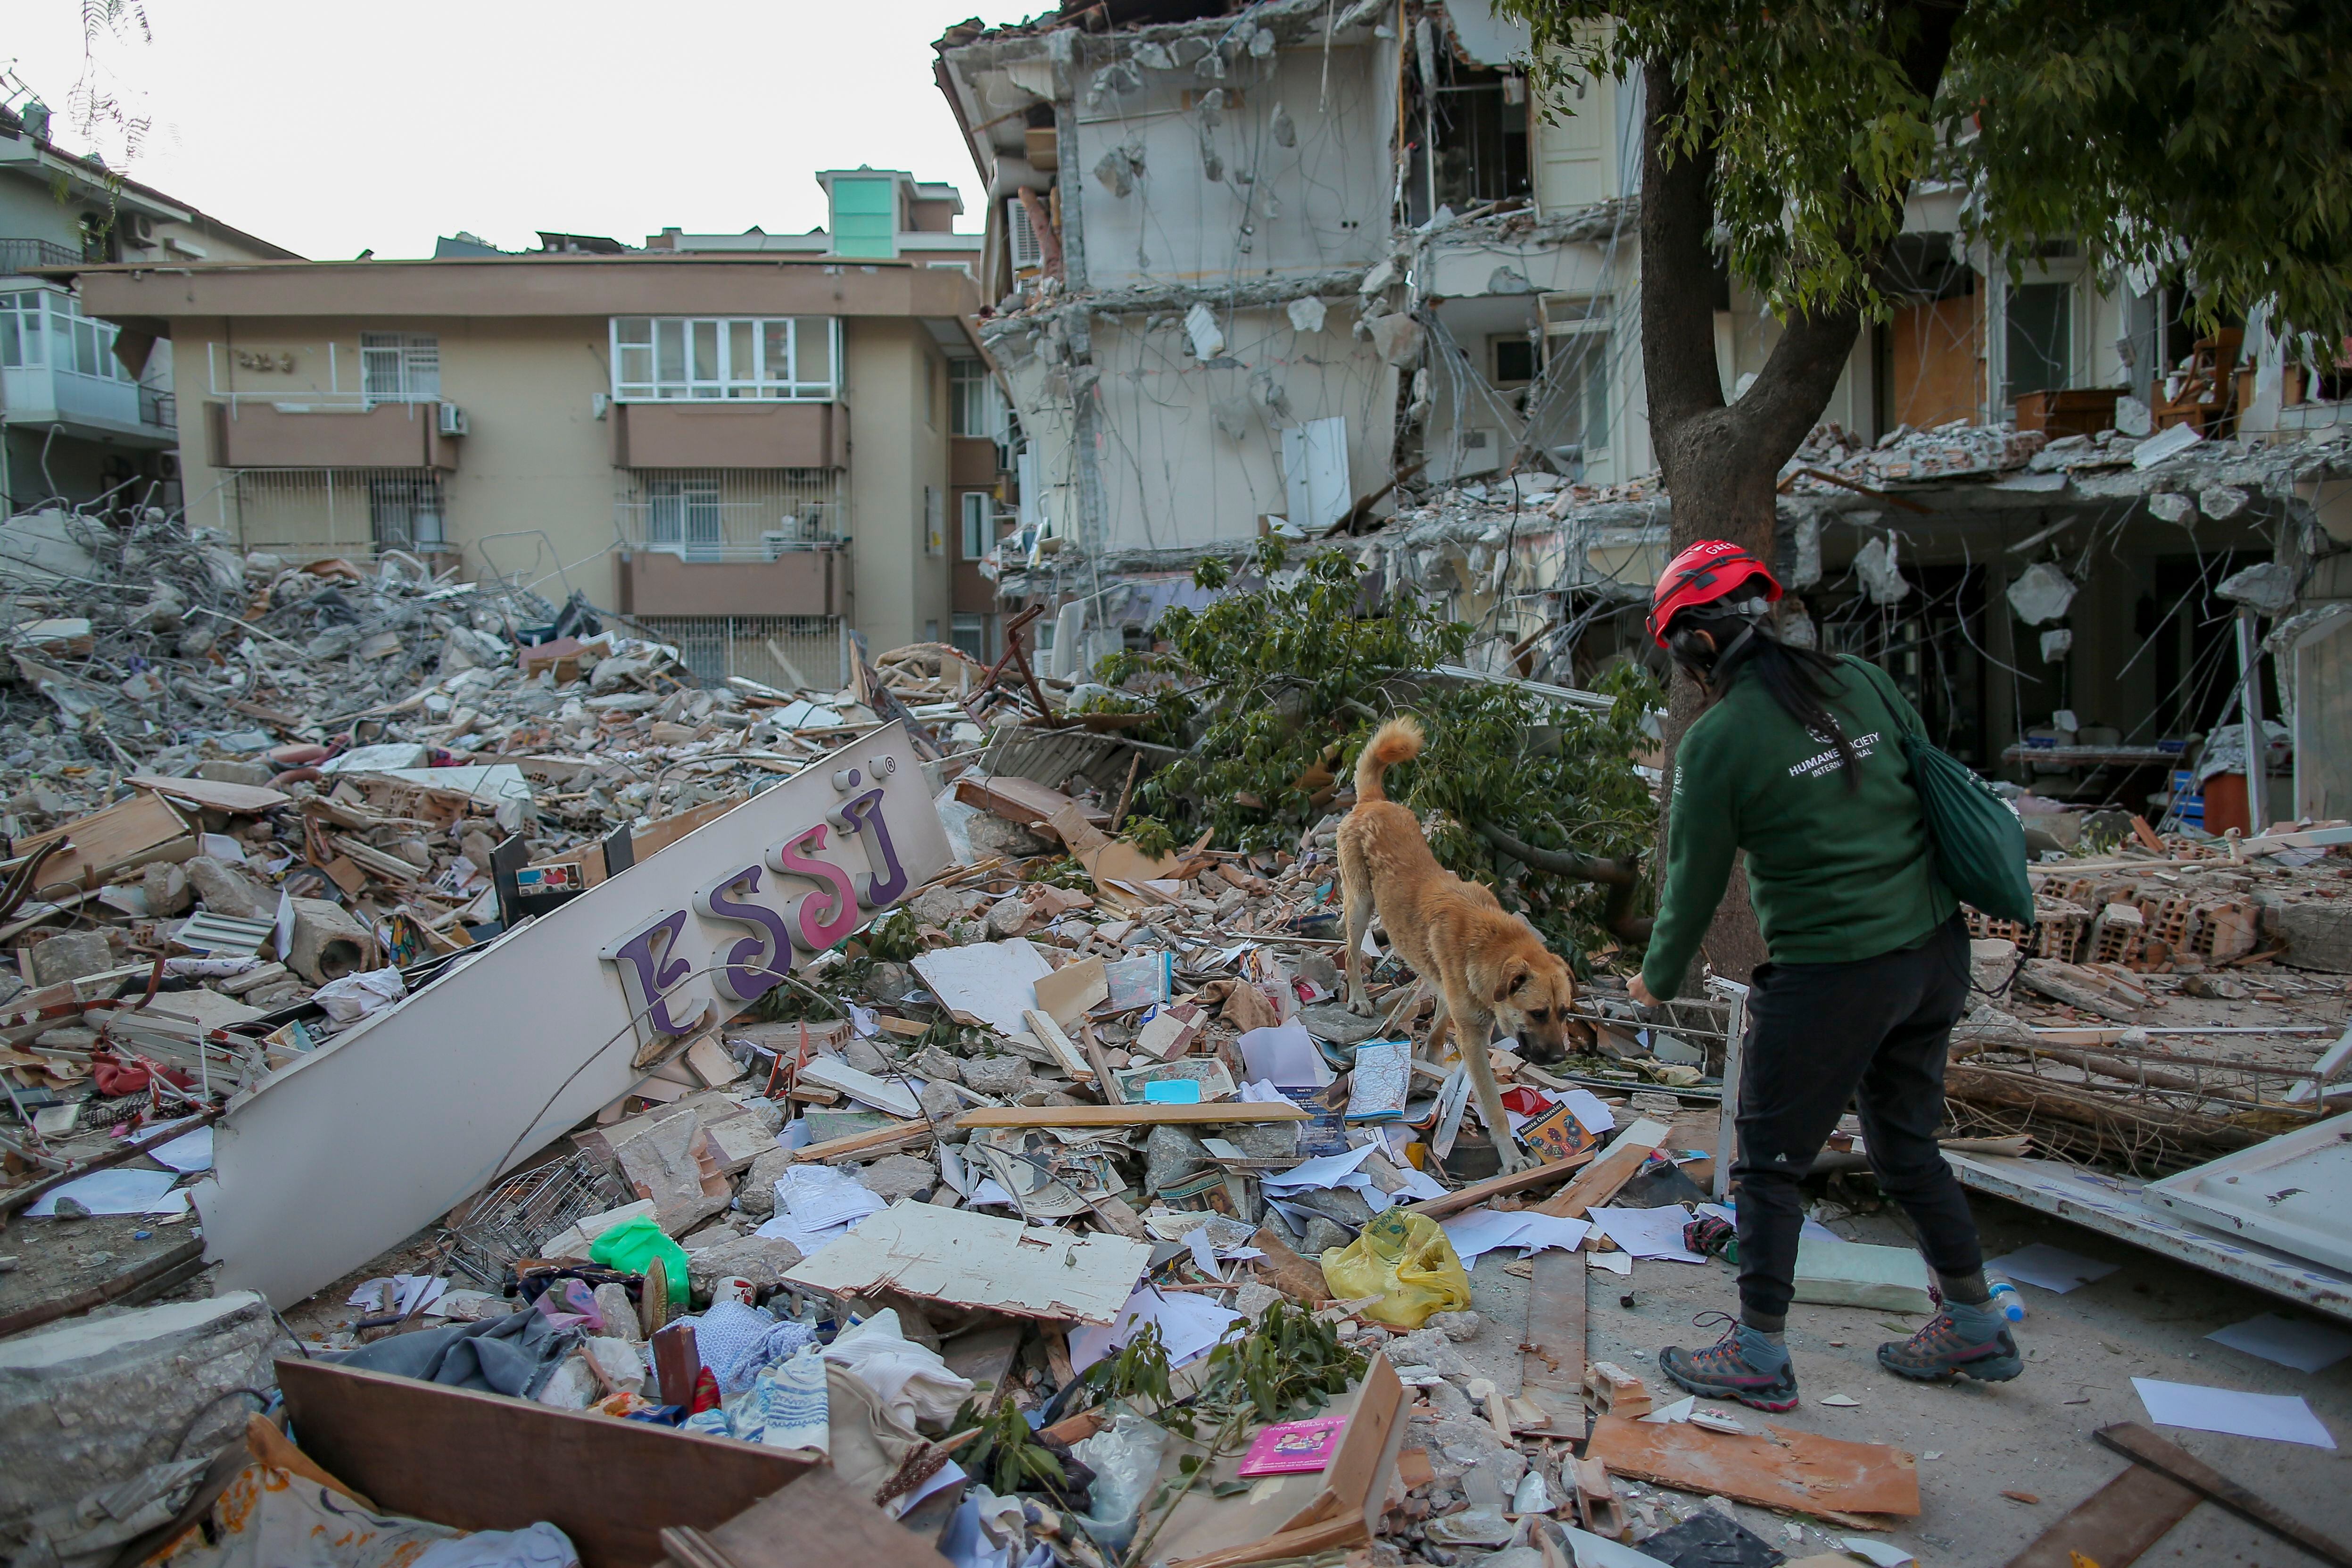 La devastación en Anakai, Turquía después del terremoto es evidente. Grettel Delgadillo estuvo en varios barrios en búsqueda de animales para rescatar. Fotografía: Emrah Gurel/AP Images para HSI